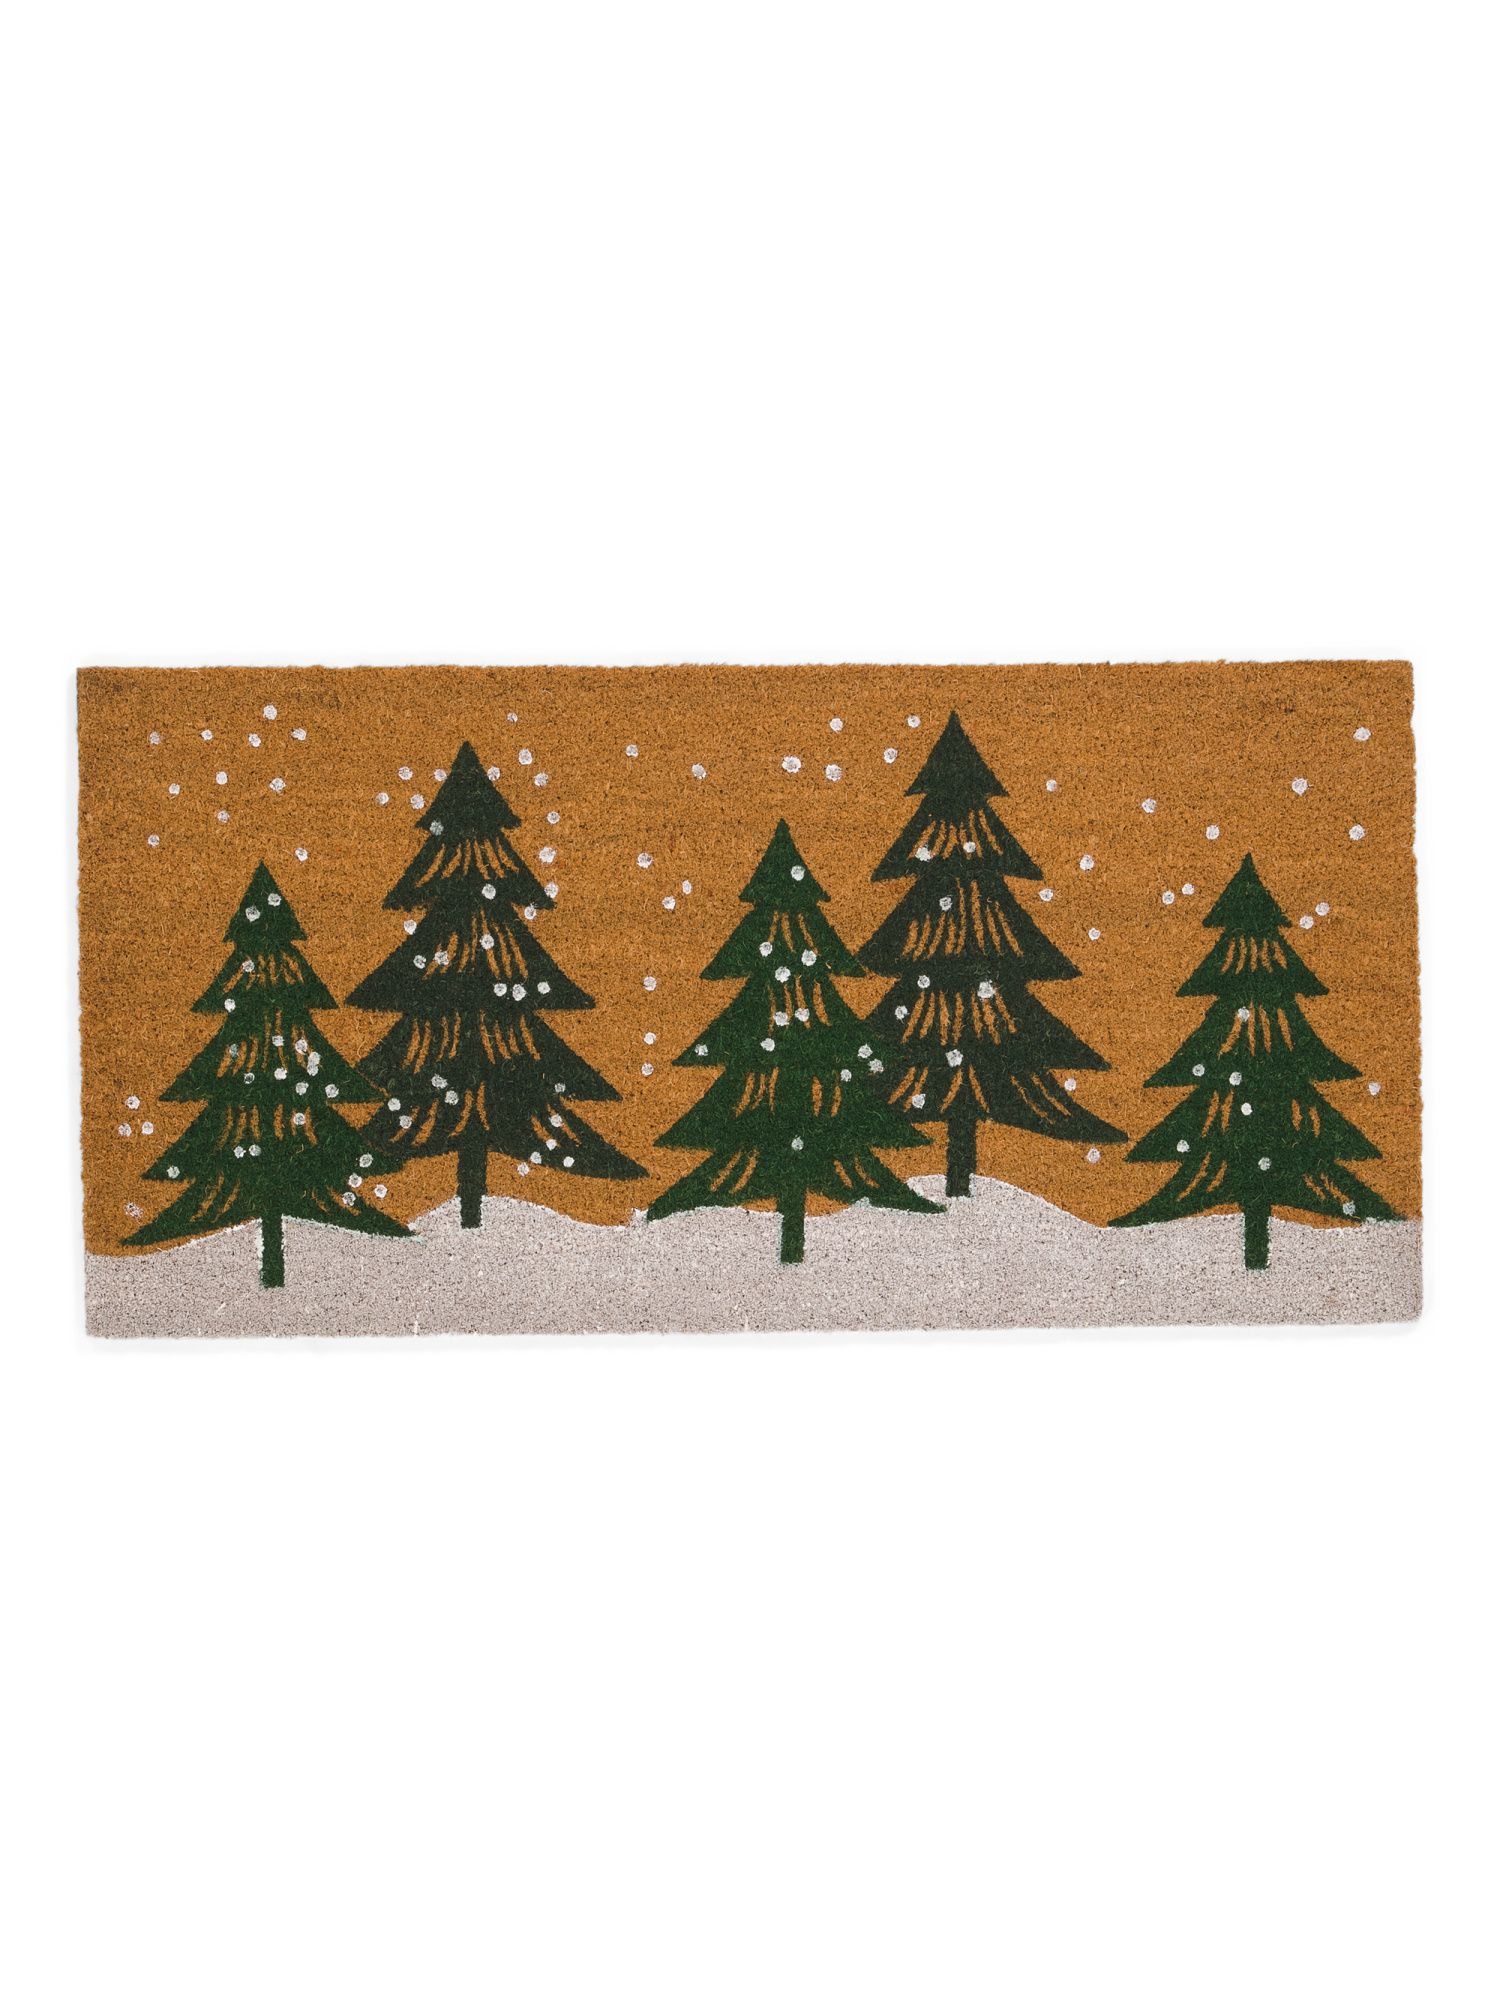 20x40 Winter Trees Doormat | TJ Maxx